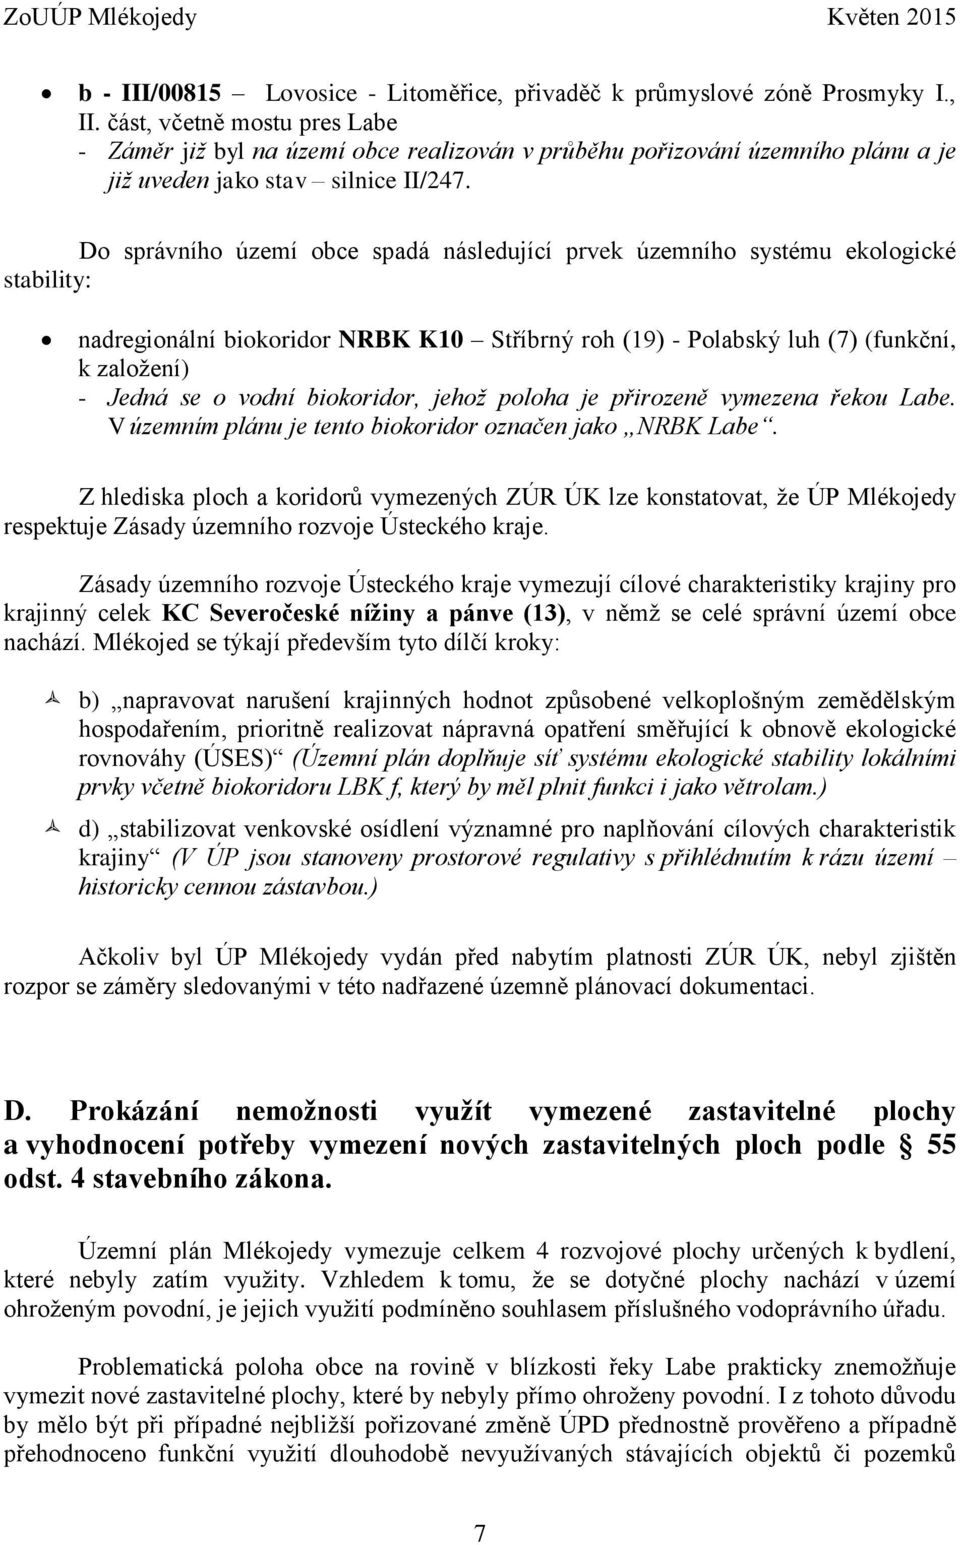 Do správního území obce spadá následující prvek územního systému ekologické stability: nadregionální biokoridor NRBK K10 Stříbrný roh (19) Polabský luh (7) (funkční, k založení) Jedná se o vodní